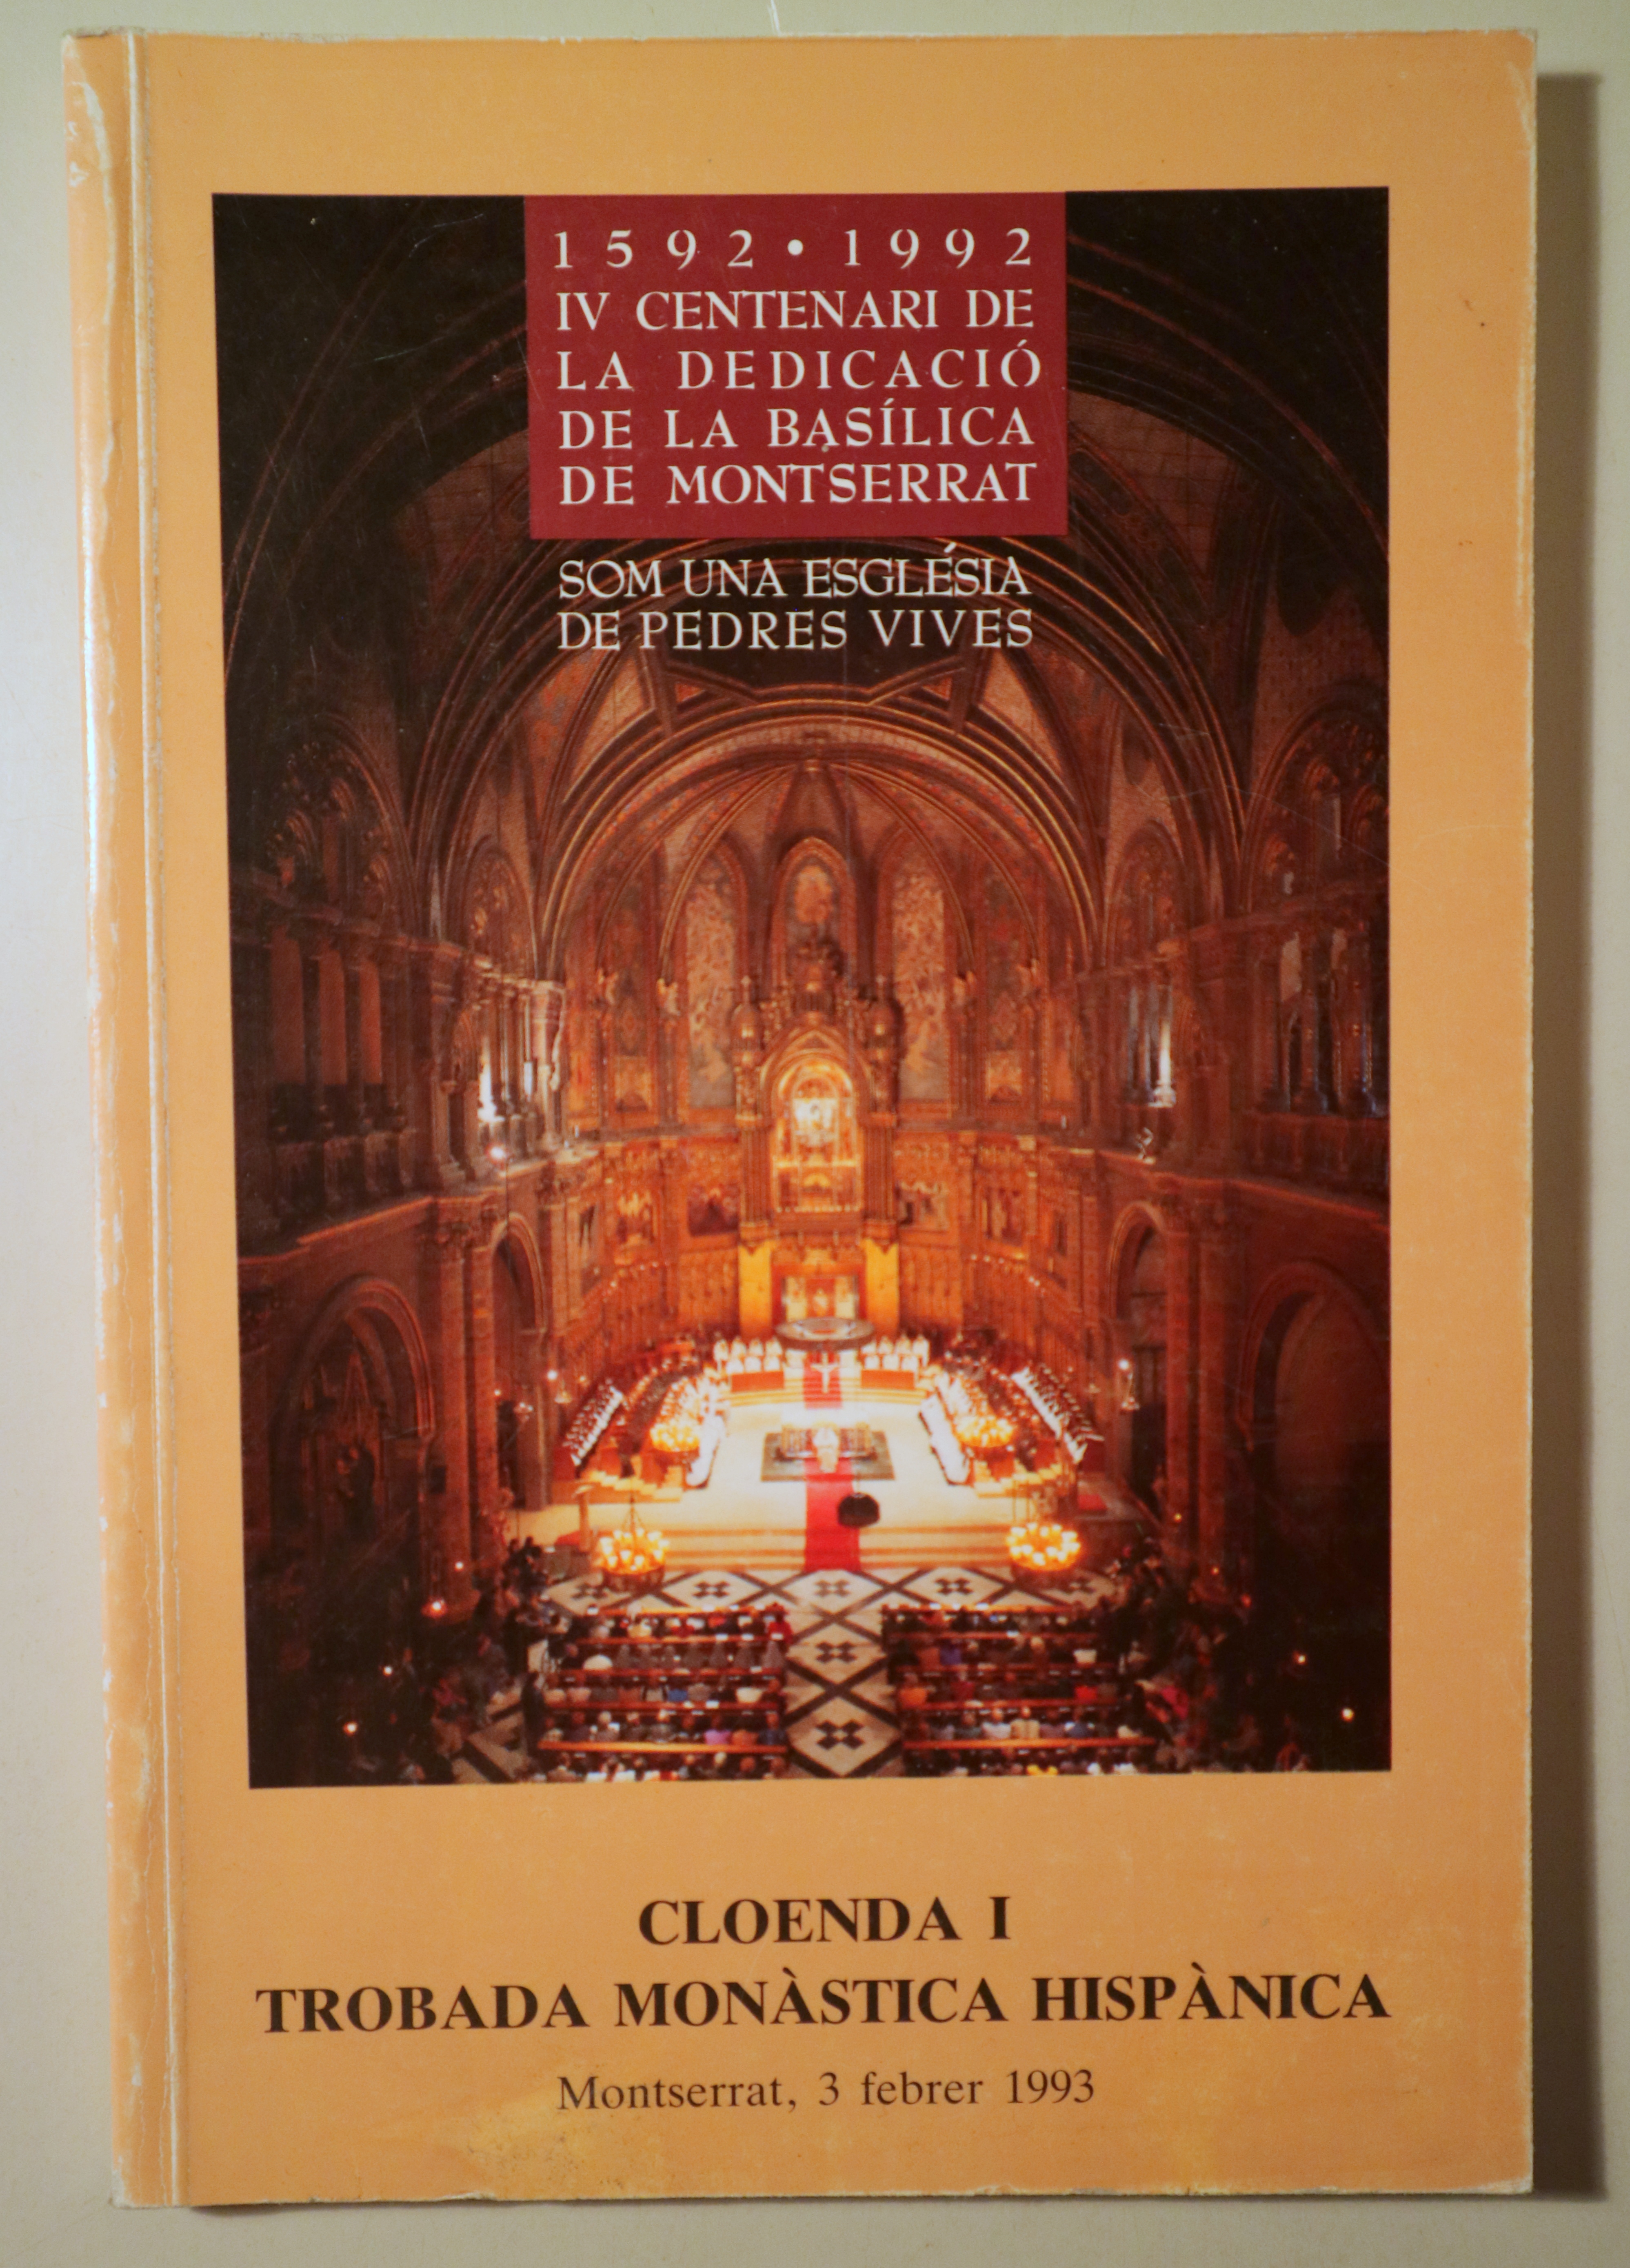 IV CENTENARI DE LA DEDICACIÓ DE LA BASÍLICA DE MONTSERRAT, 1592-1992. Cloenda i trobada monàstica hispànica. Montserrat, 3 febr